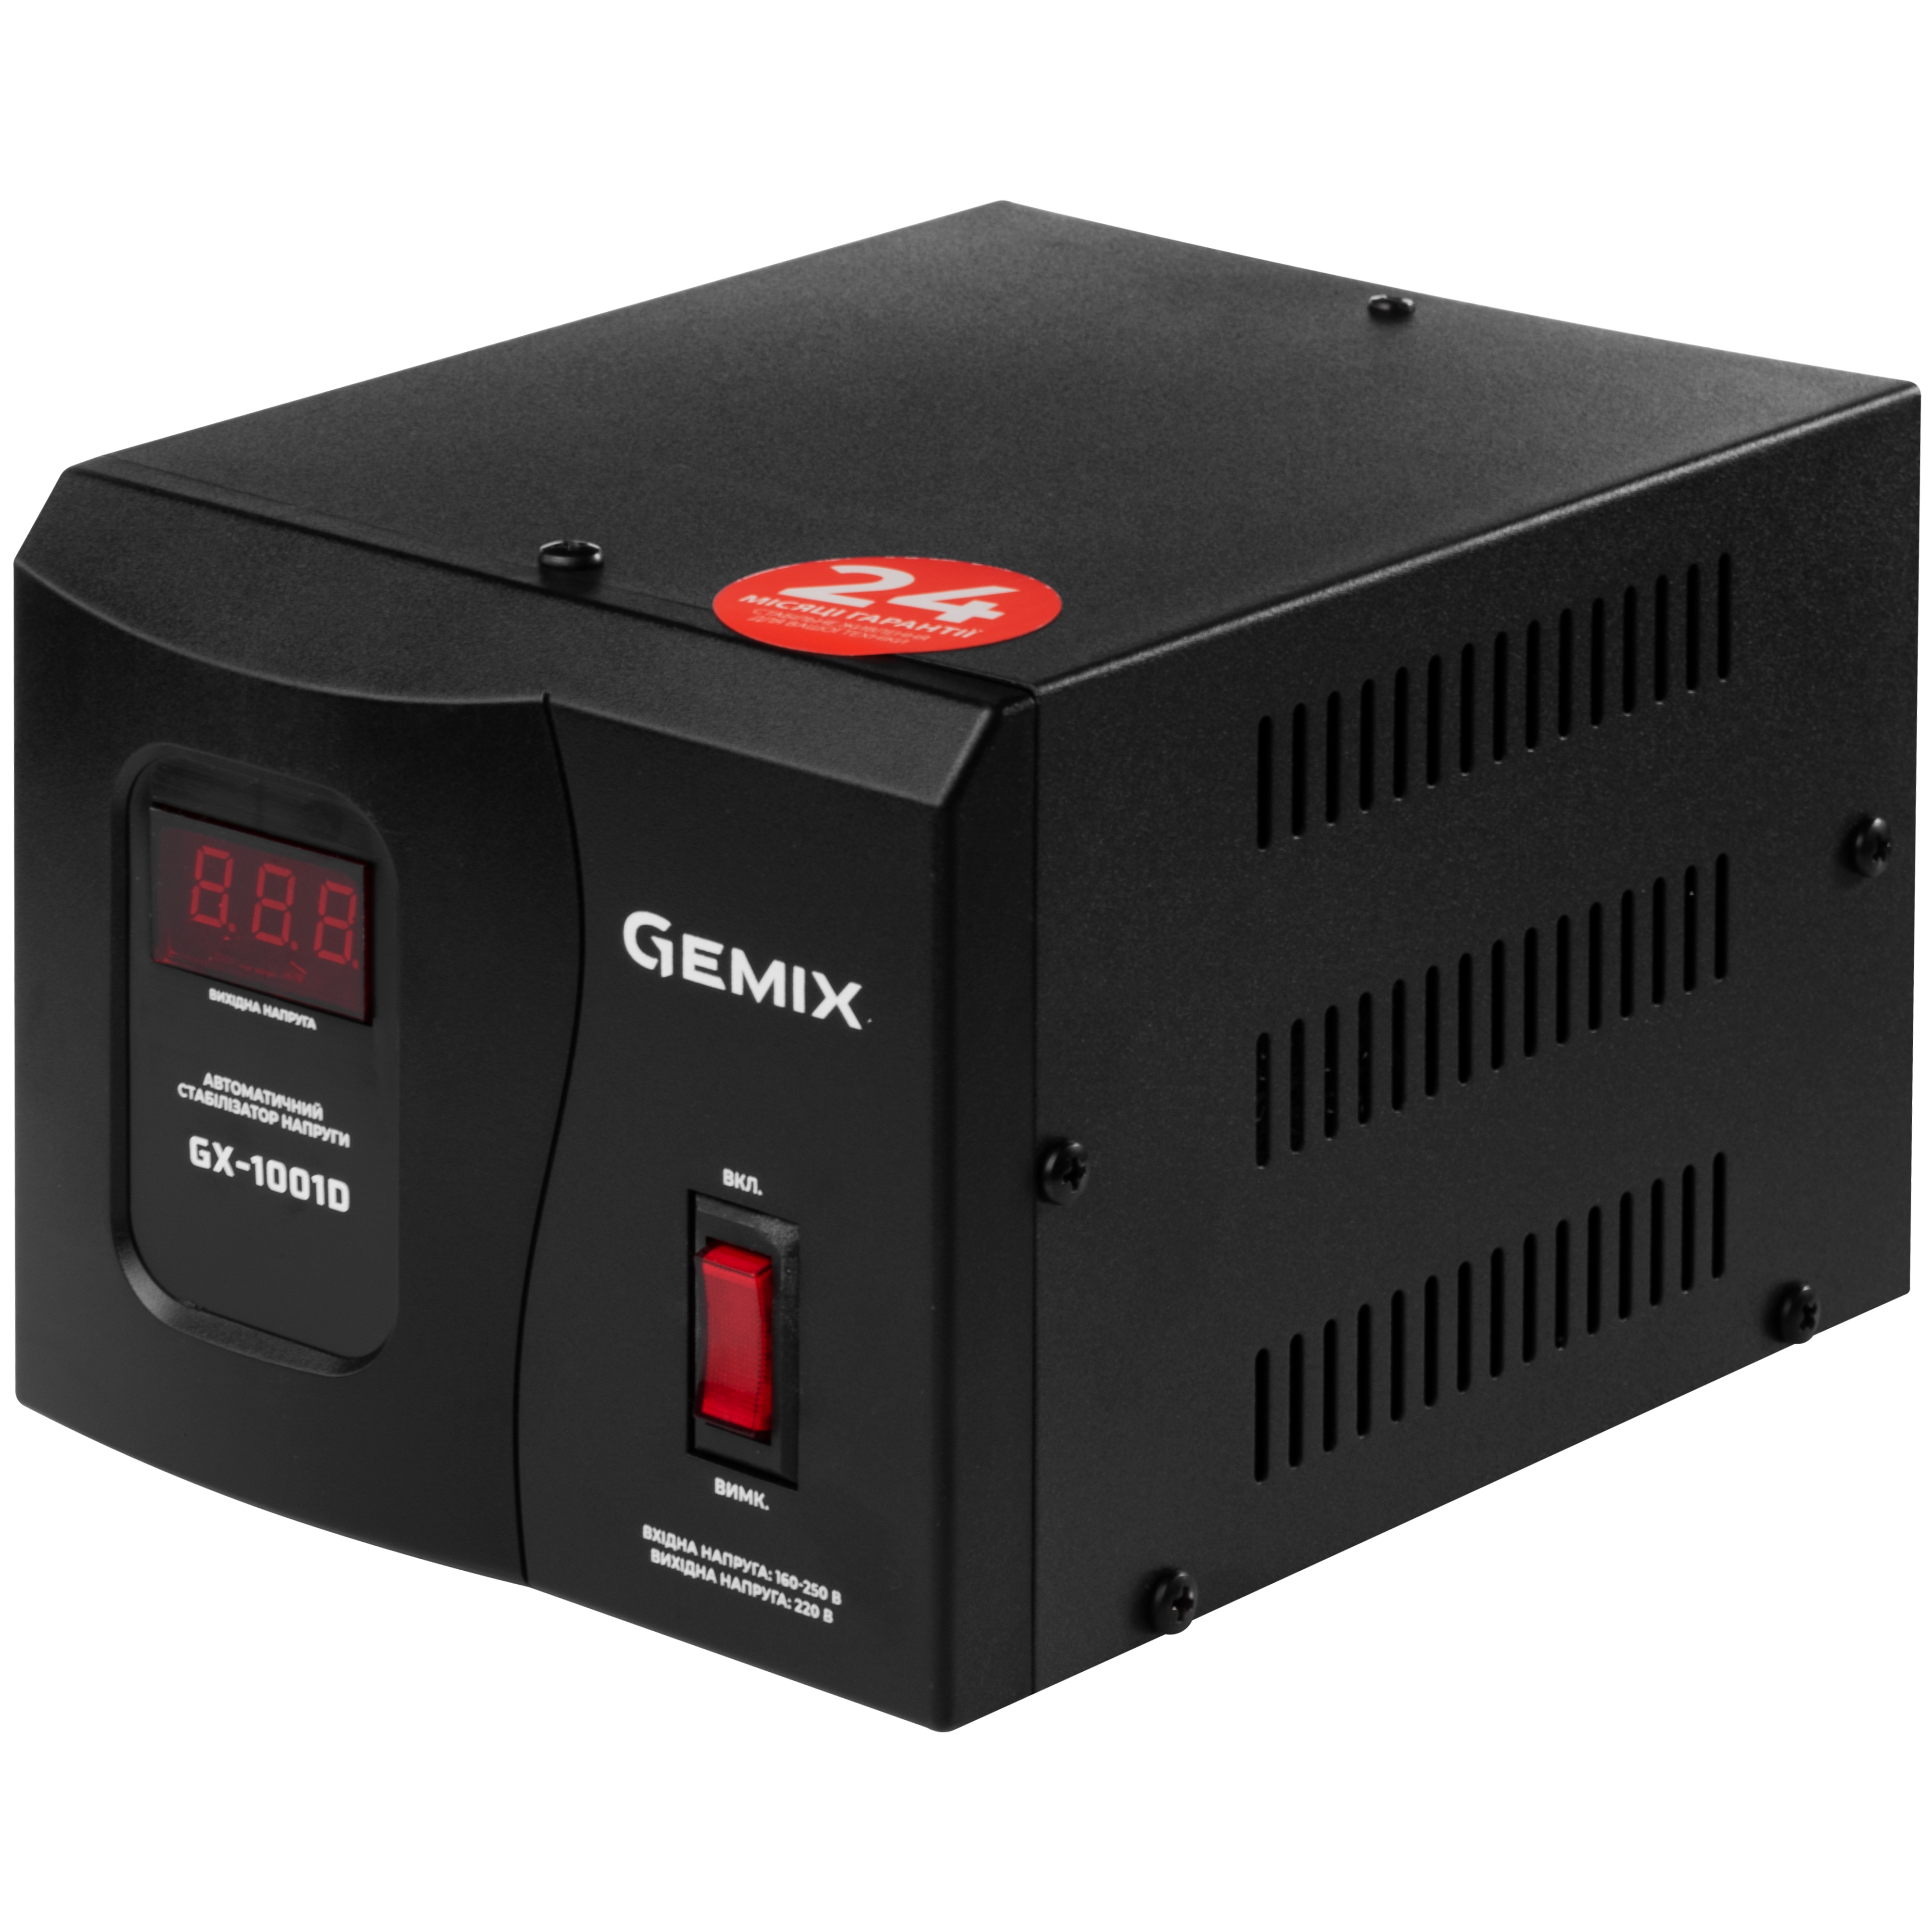 Стабилизатор напряжения Gemix GX-1001D в интернет-магазине, главное фото